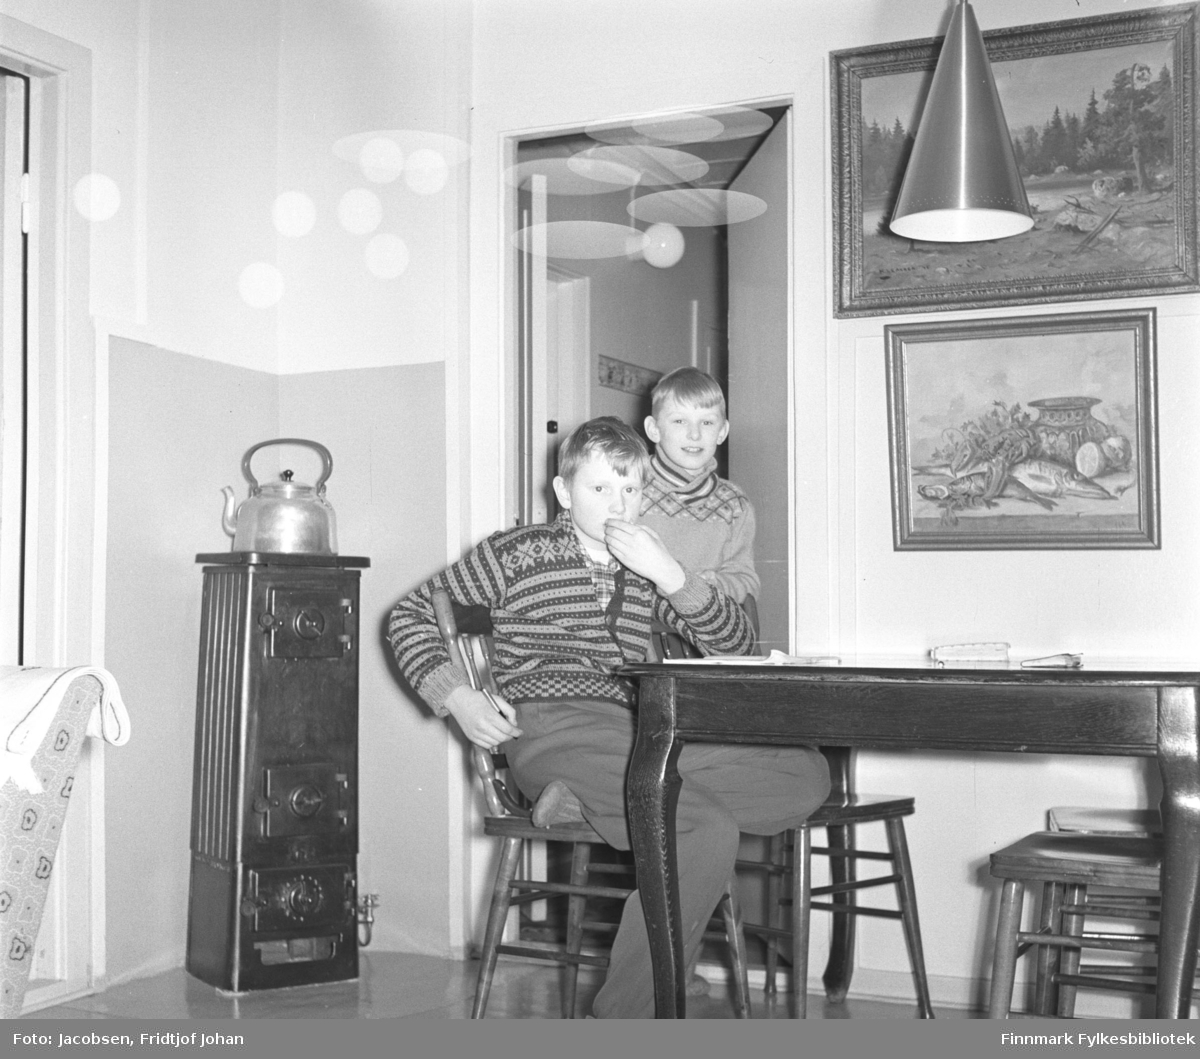 Fra stua til Fridtjof og Aase Jacobsen i Storvannsveien, vinteren 1958. På stolen sitter Arne Jacobsen. Han har en ganske lys bukse og strikkejakke med mønster på seg. Bak han står fetteren Ivar, iført en lys genser. Bordet og pinnestolene er mørke. To malerier henger på veggen over det og en taklampe ses oppe til høyre på bildet. En høy vedovn står i hjørnet med en stor kjele oppå.